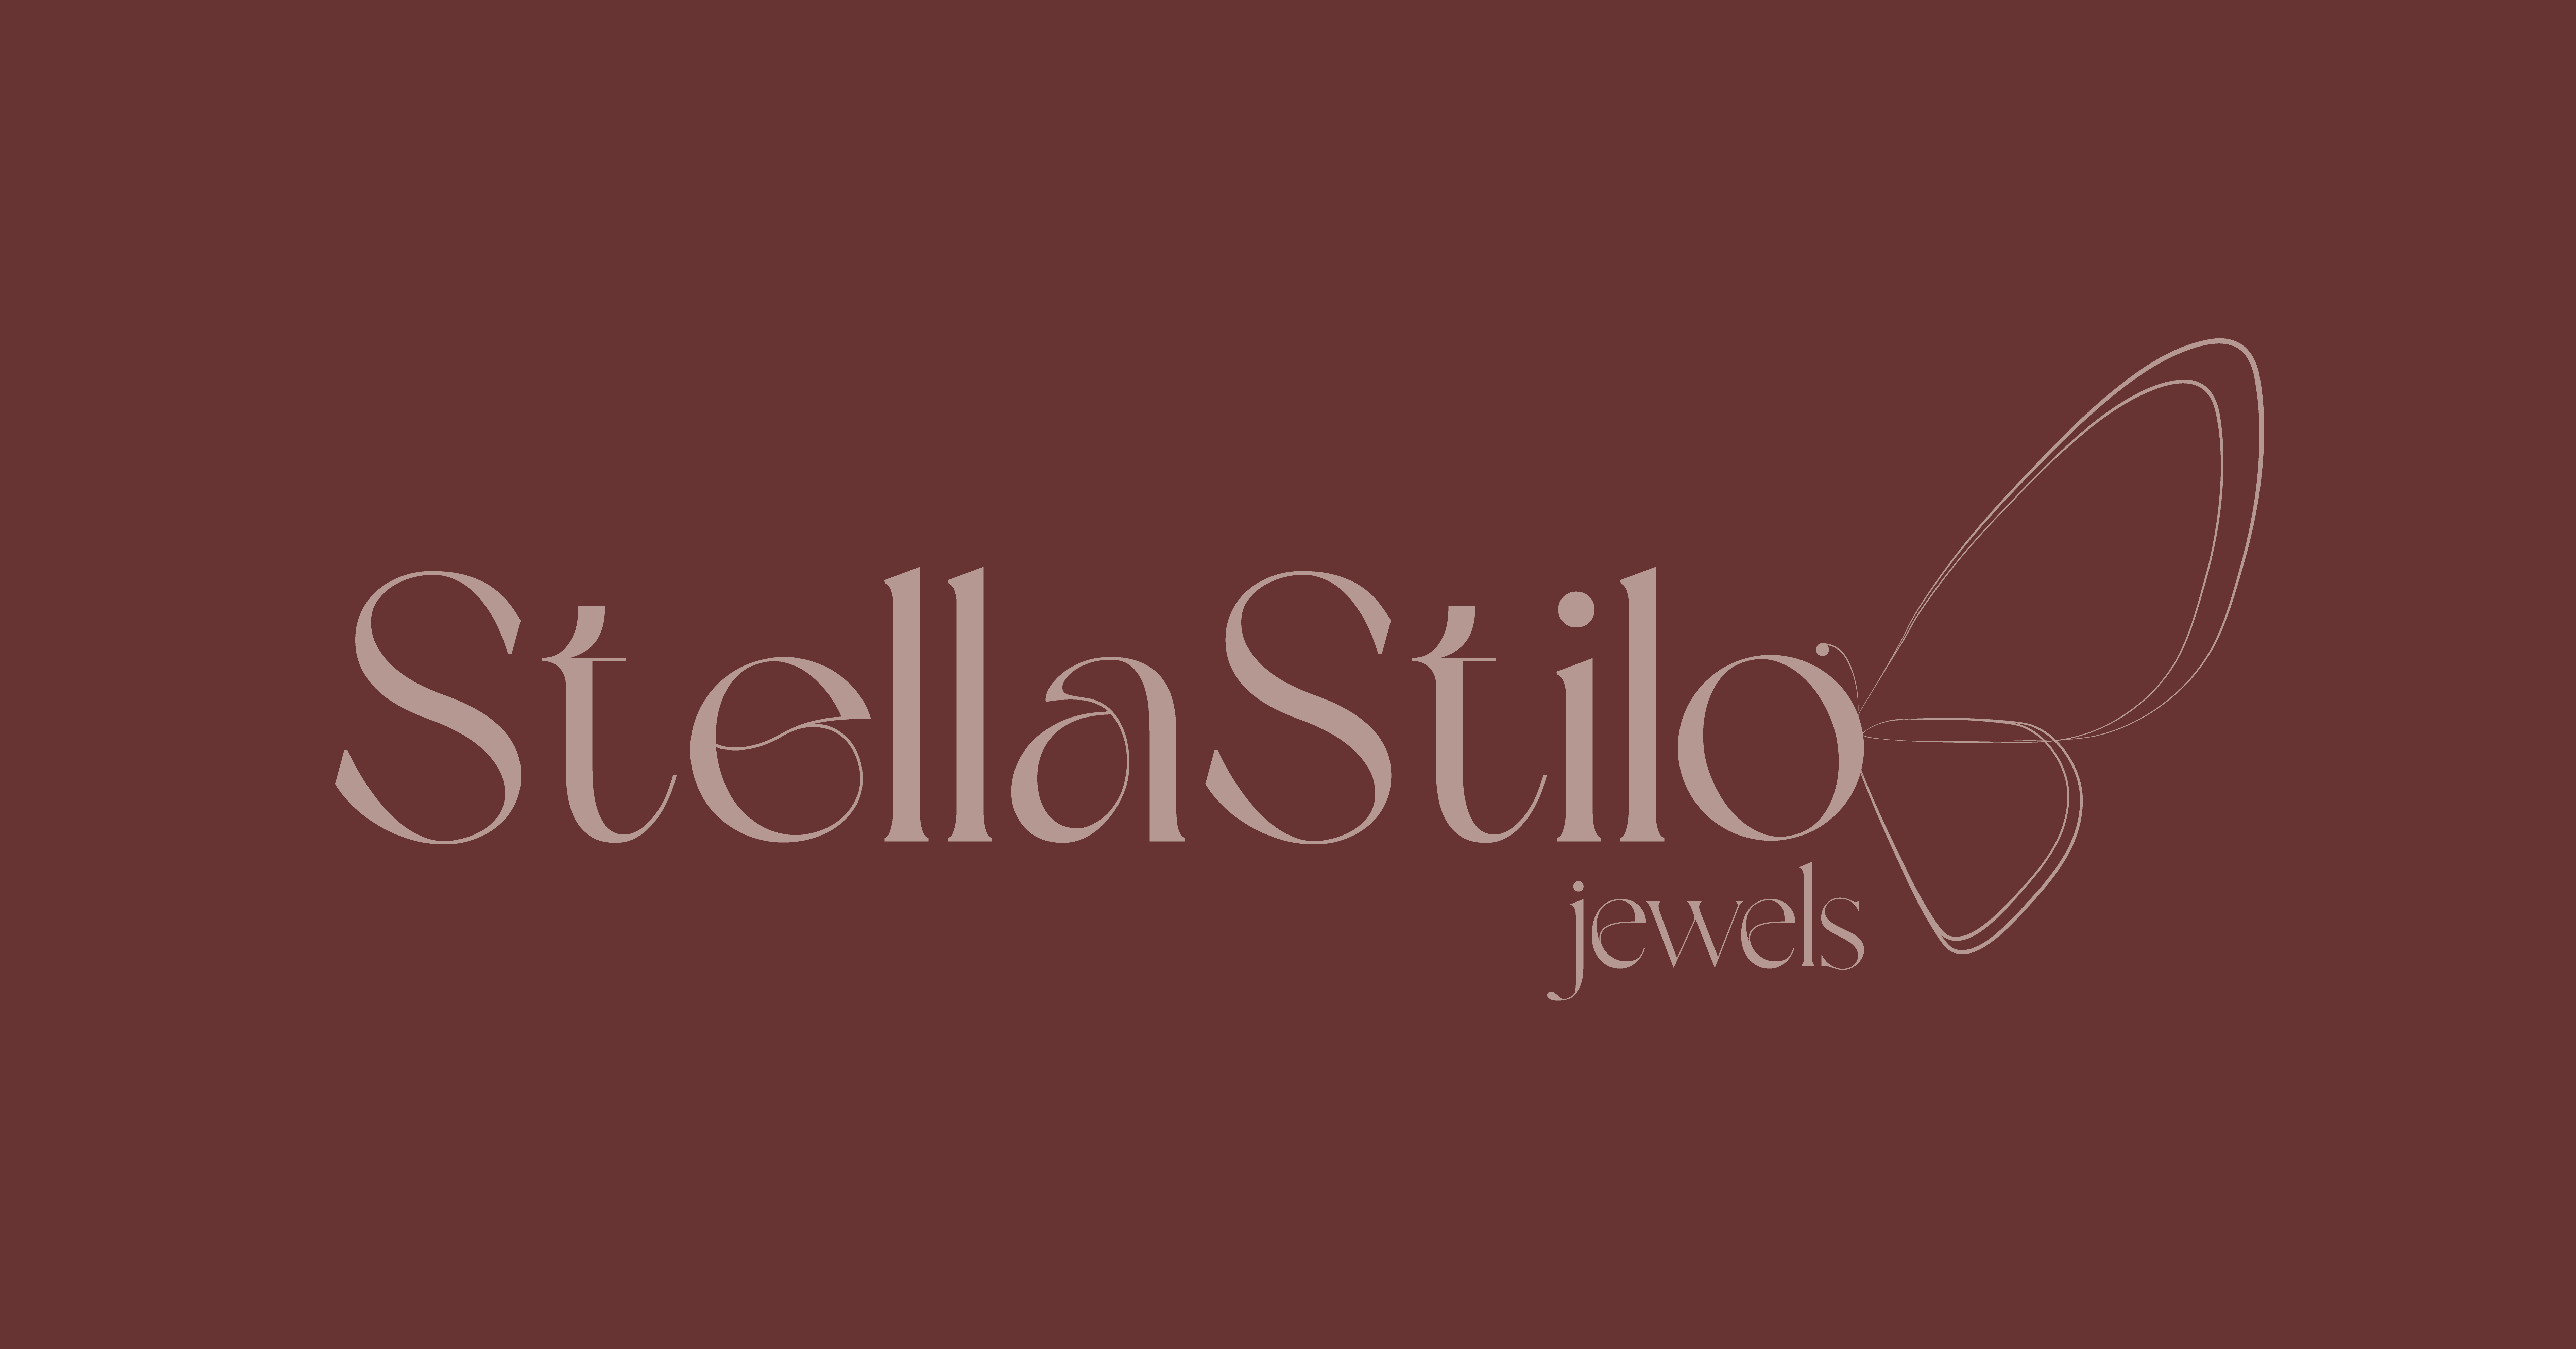 banner stellastilo jewels